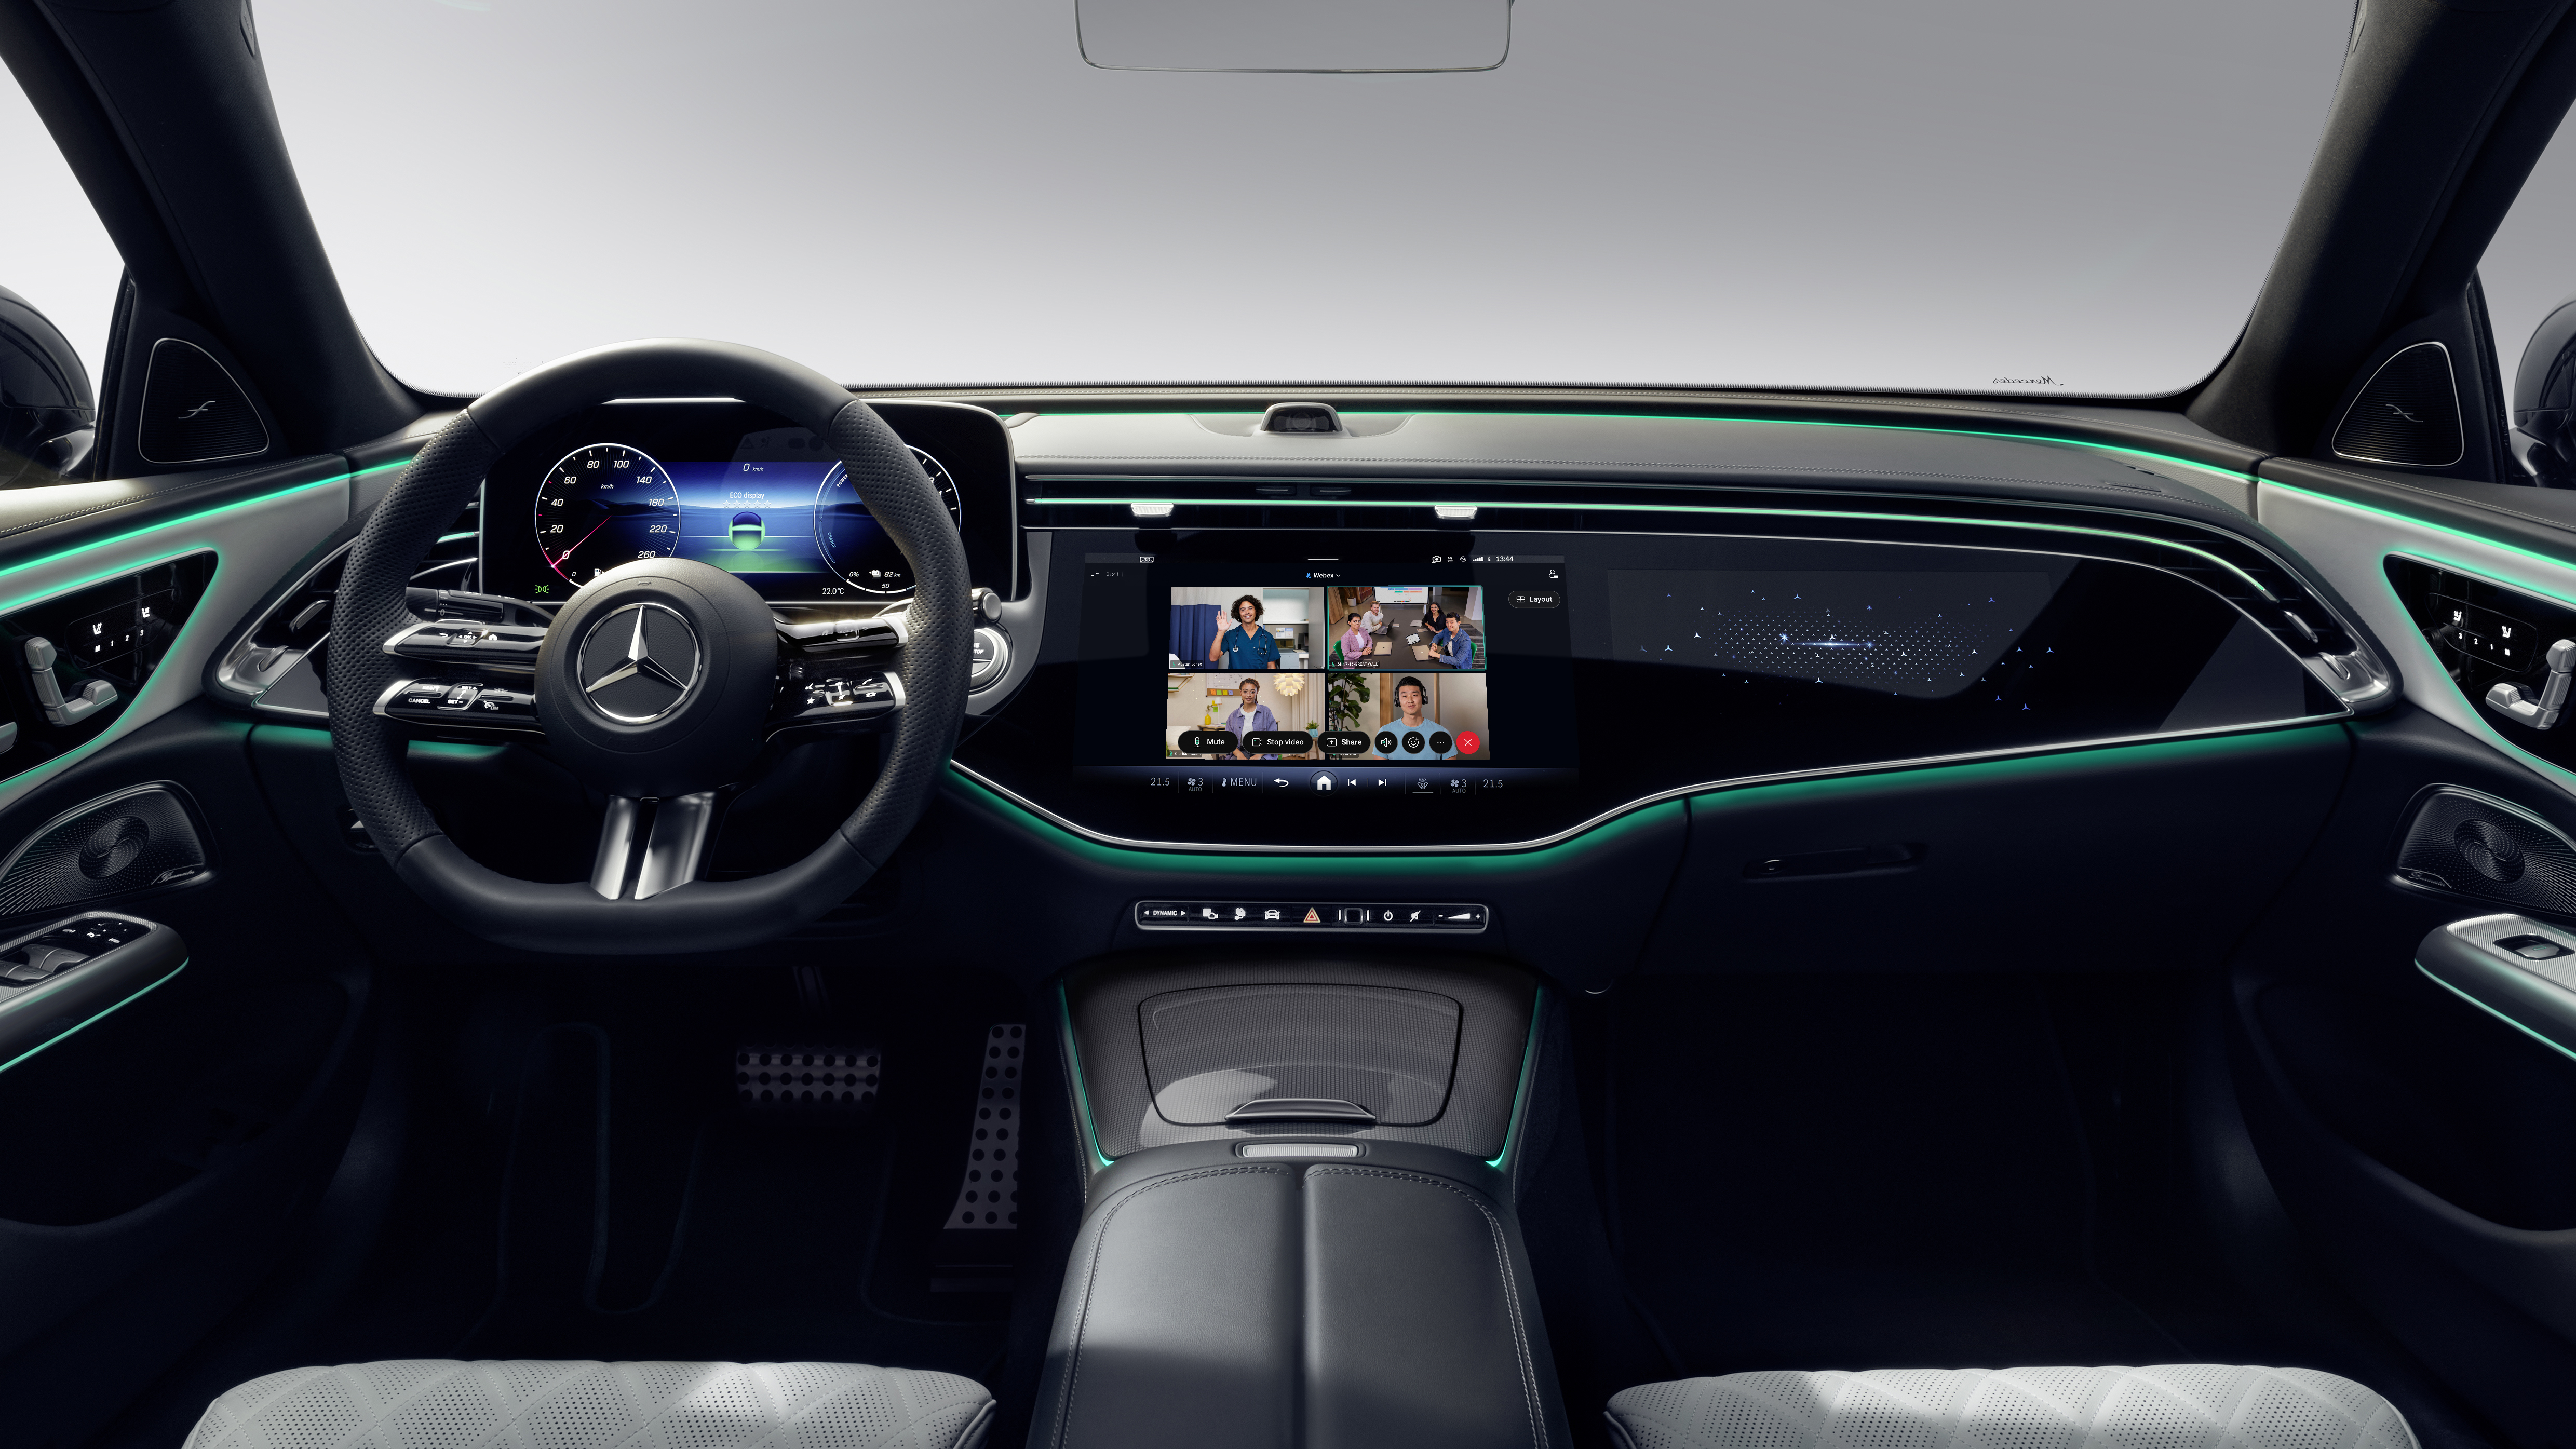 Bientôt, vous pourrez assister à vos réunions dans une Mercedes-Benz Classe E